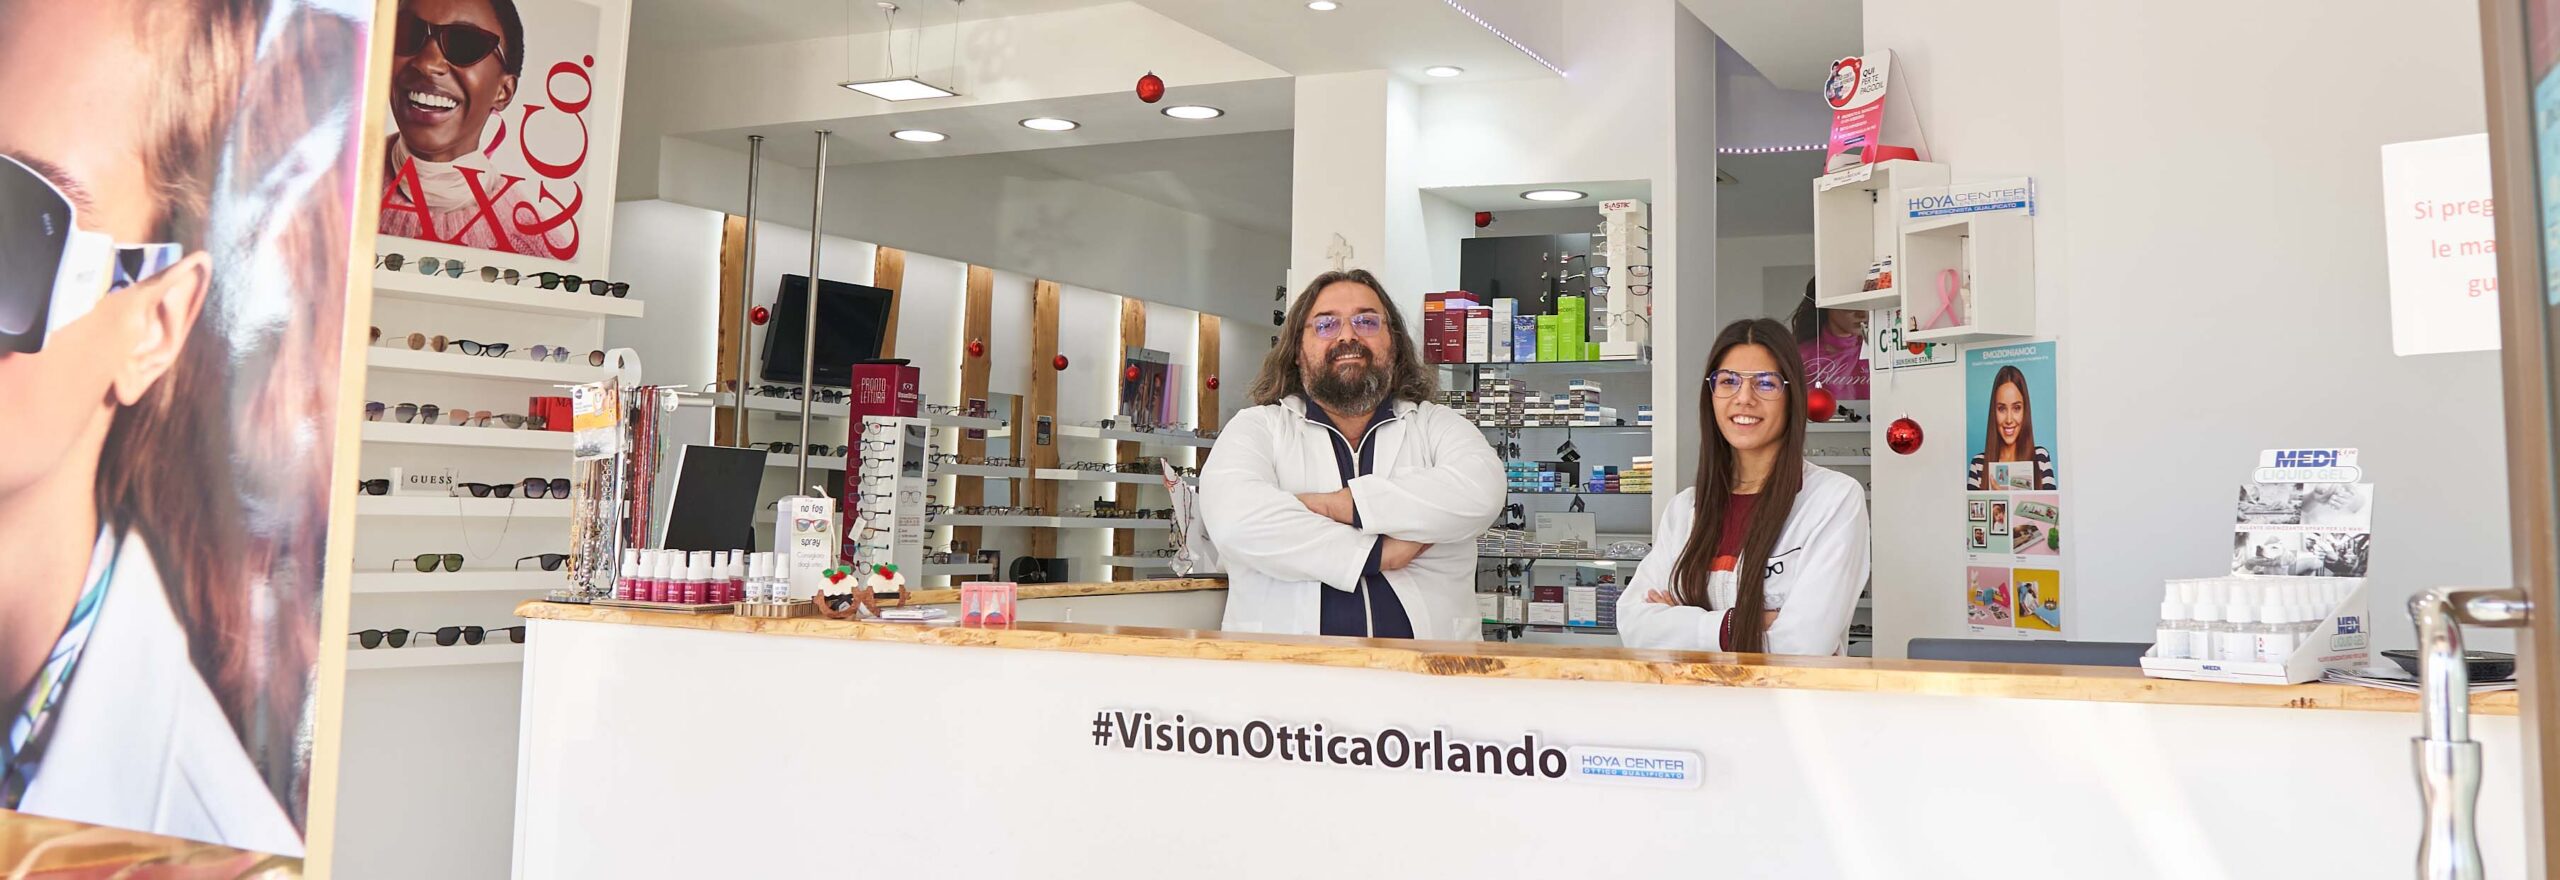 Visionottica Orlando Staff